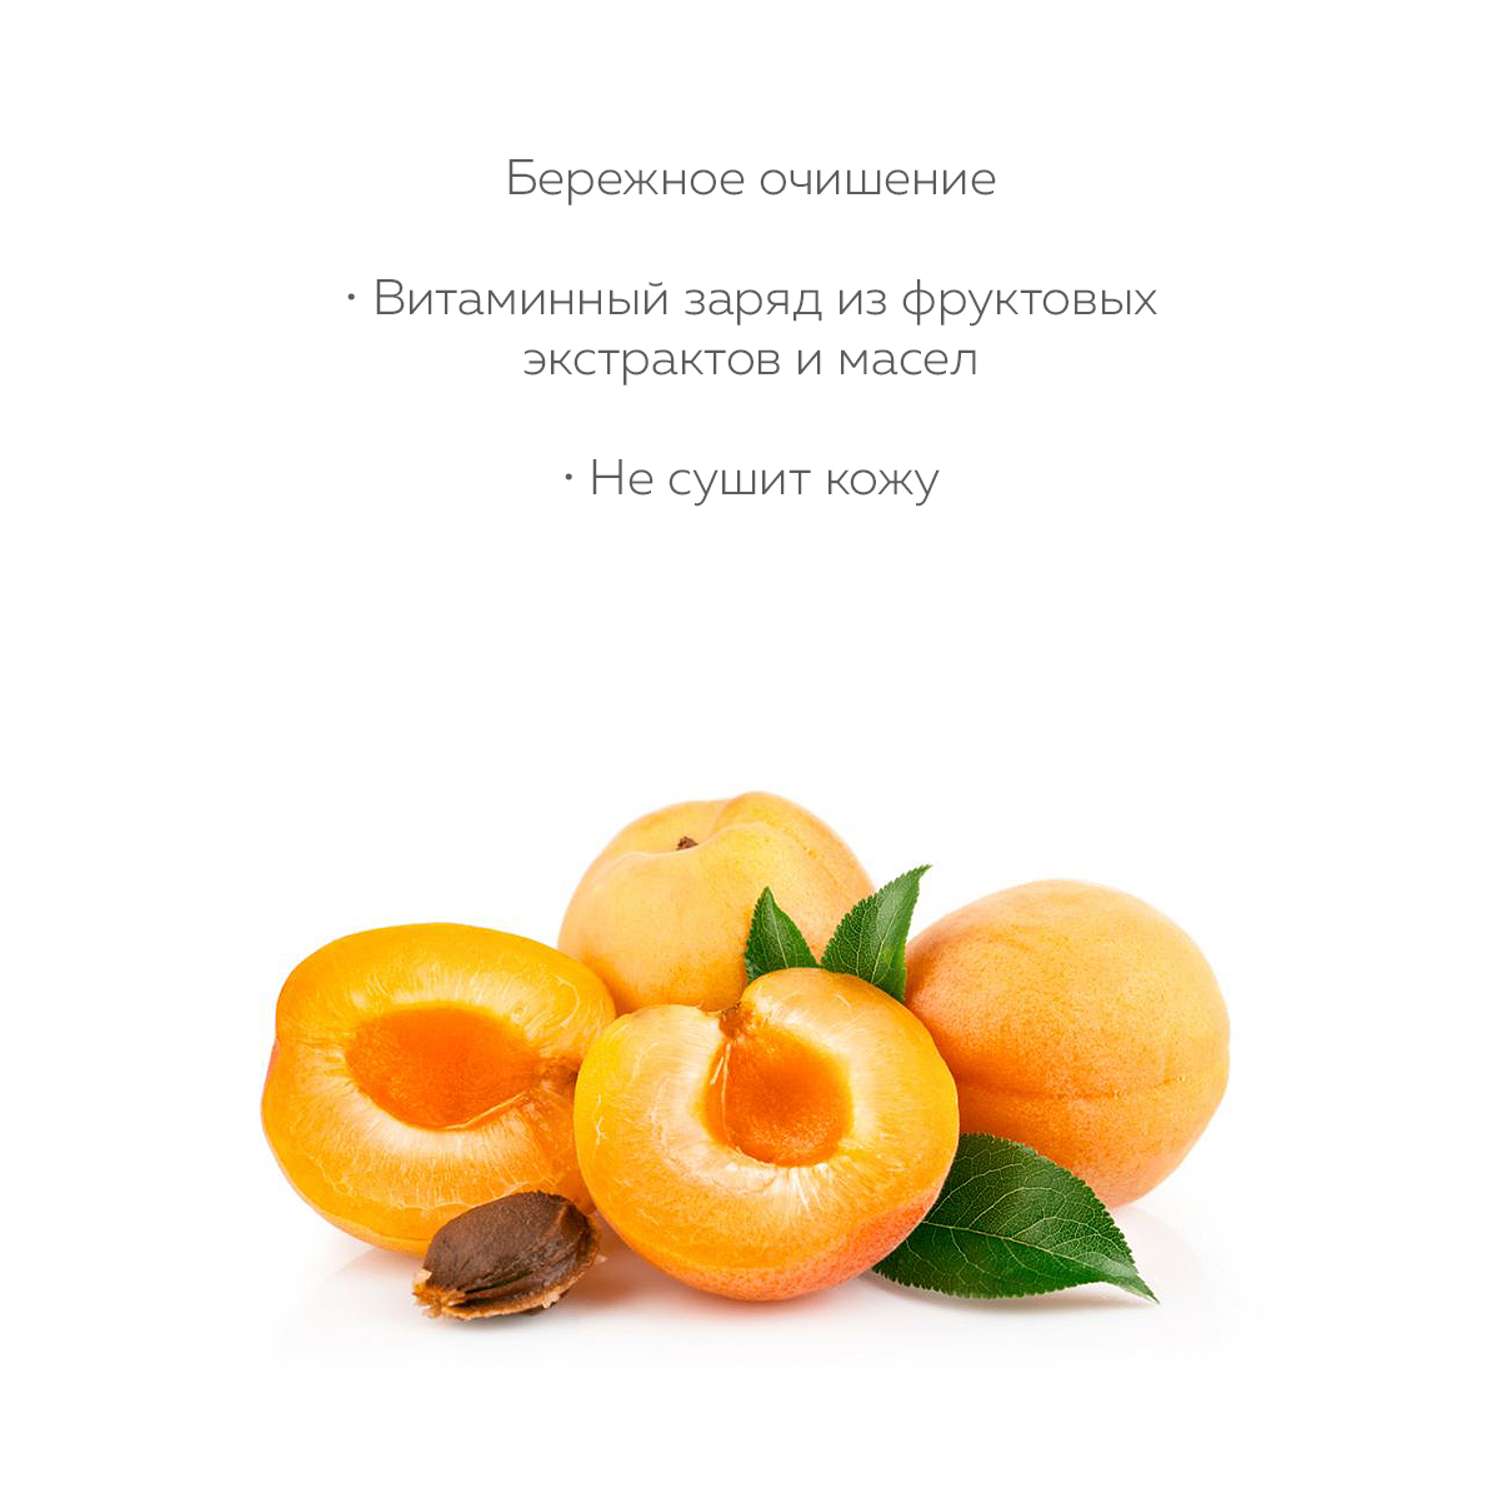 Гель для душа Marussia С маслом абрикоса увлажняющий 400 мл - фото 4